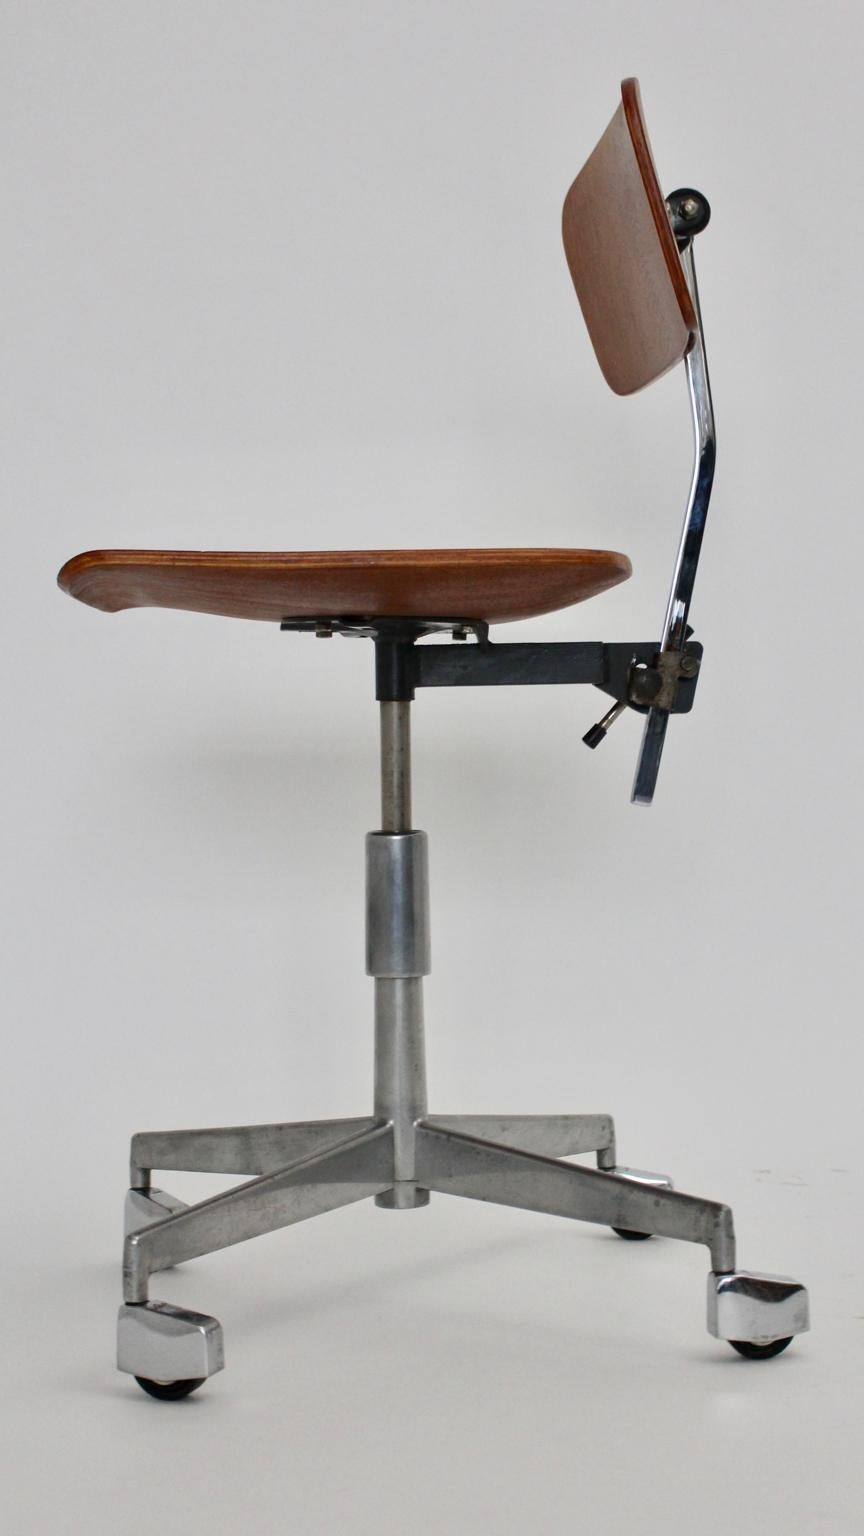 20th Century Mid-Century Modern Vintage Brown Beech Desk Chair Jorgen Rasmussen 1950s Denmark For Sale